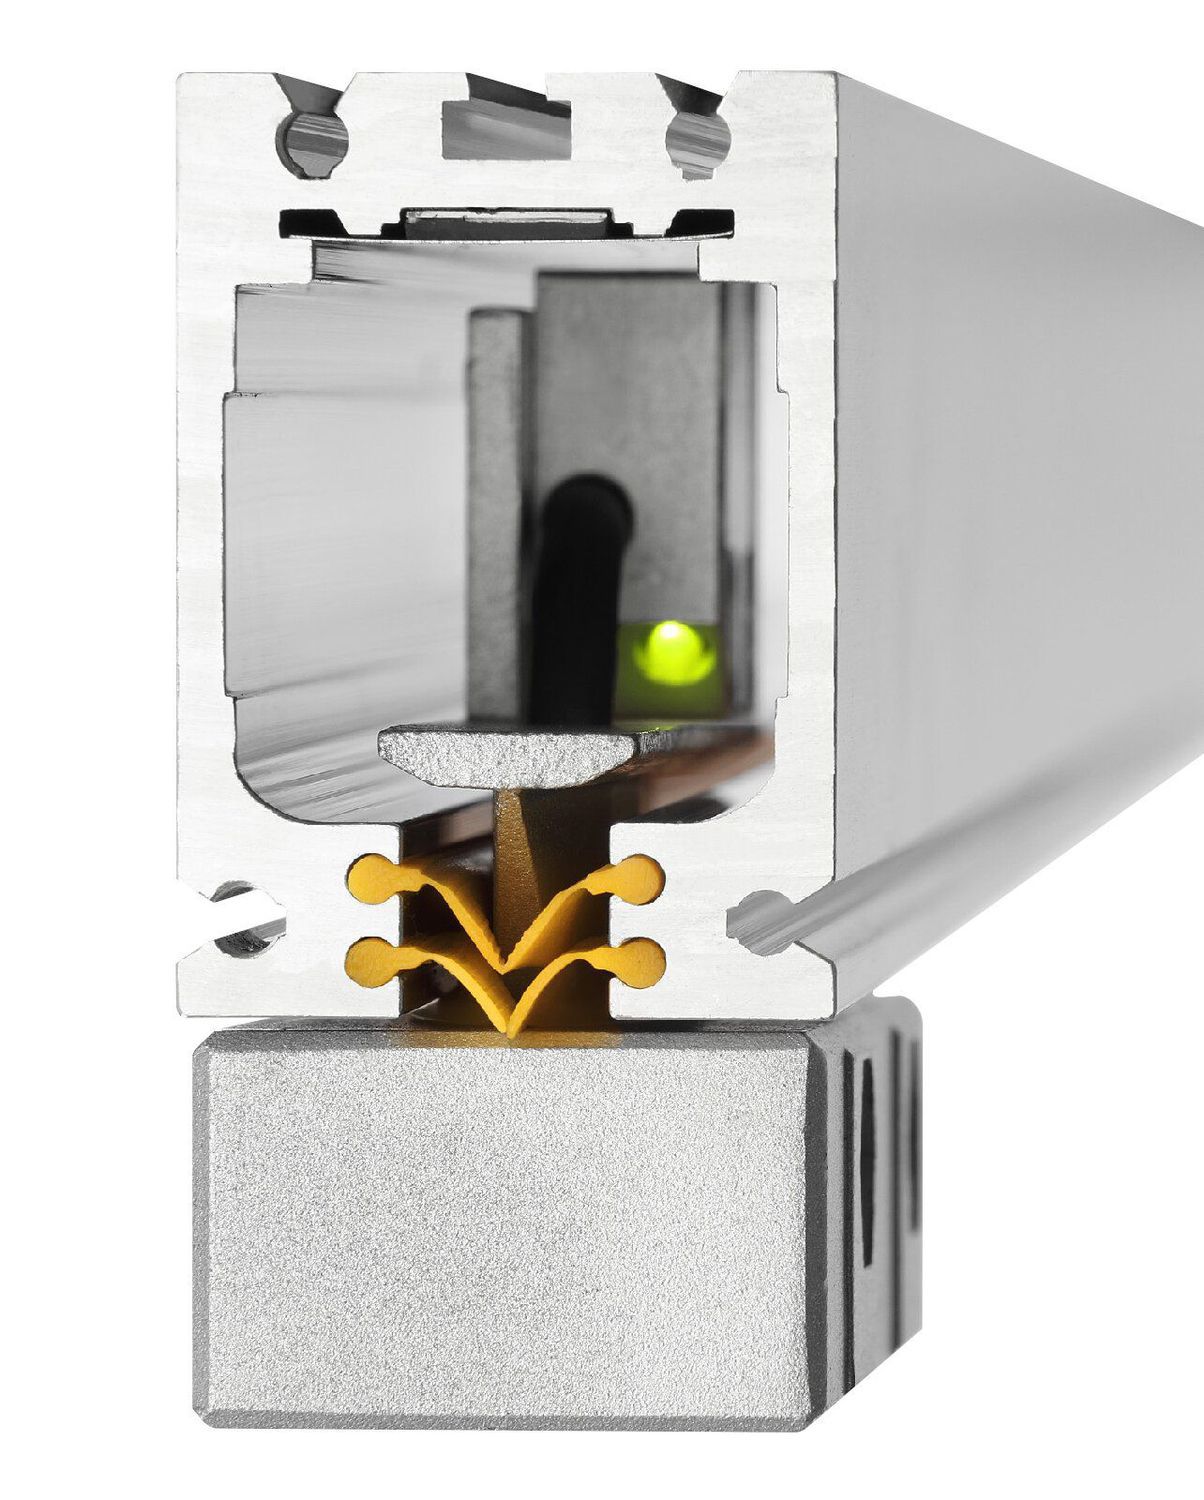 K+C Magnetmaßstab MSX 350 mm - 5 µm | Verfahrweg 360 mm